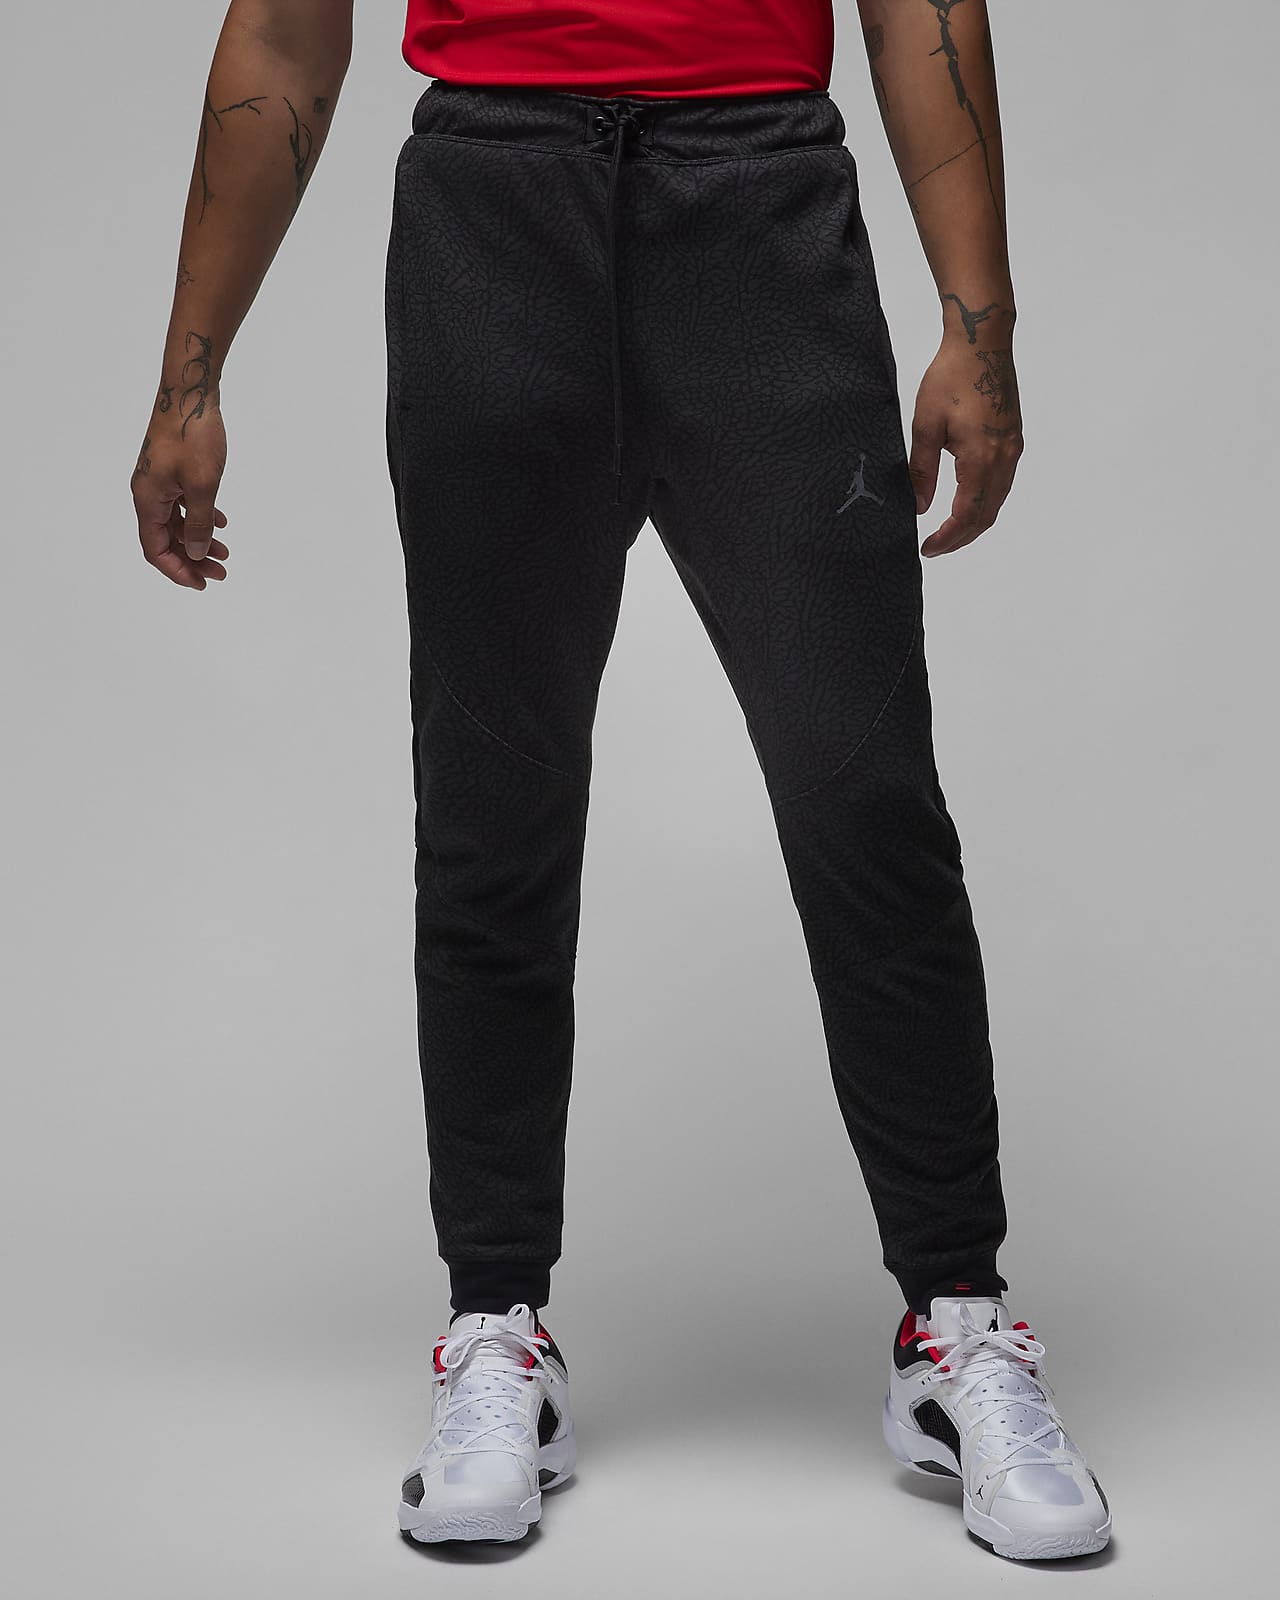 Nike Dri-FIT Men Cotton Activewear Pants for Men